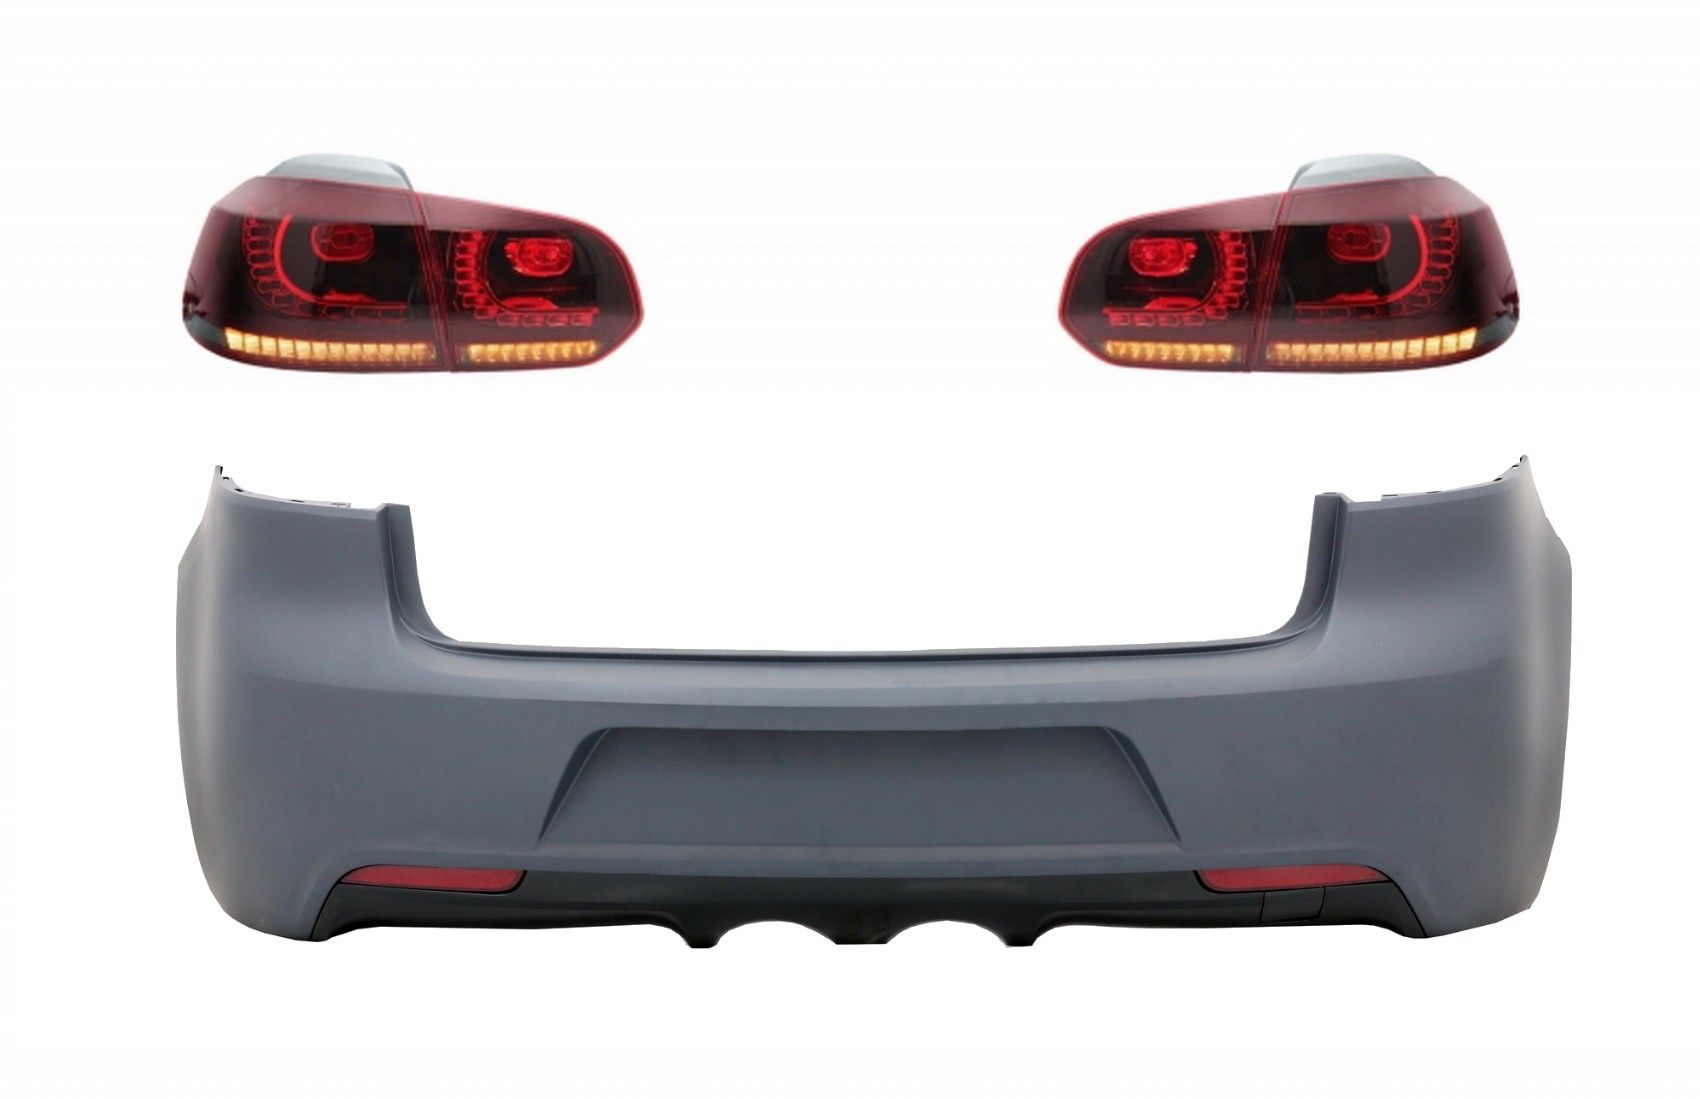 Hátsó lökhárító hátsó lámpákkal Full LED VW Golf 6 VI (2008-2013) R20 Design Red Cherry szekvenciális dinamikus kanyarodó lámpákkal (LHD és RHD)